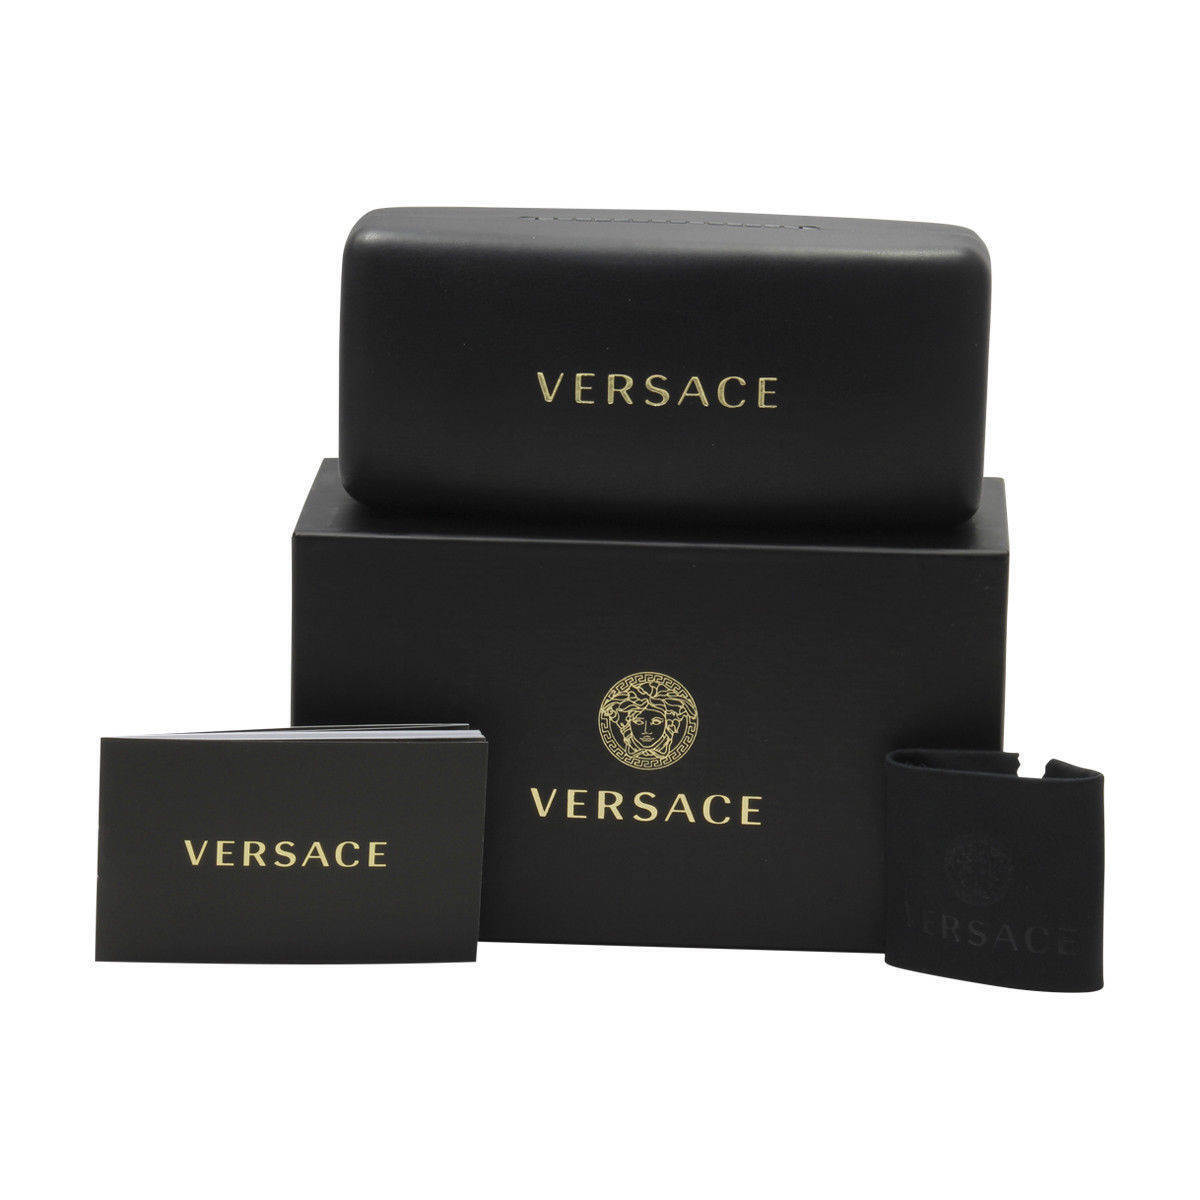 Versace VE3335F-5404-56  New Eyeglasses